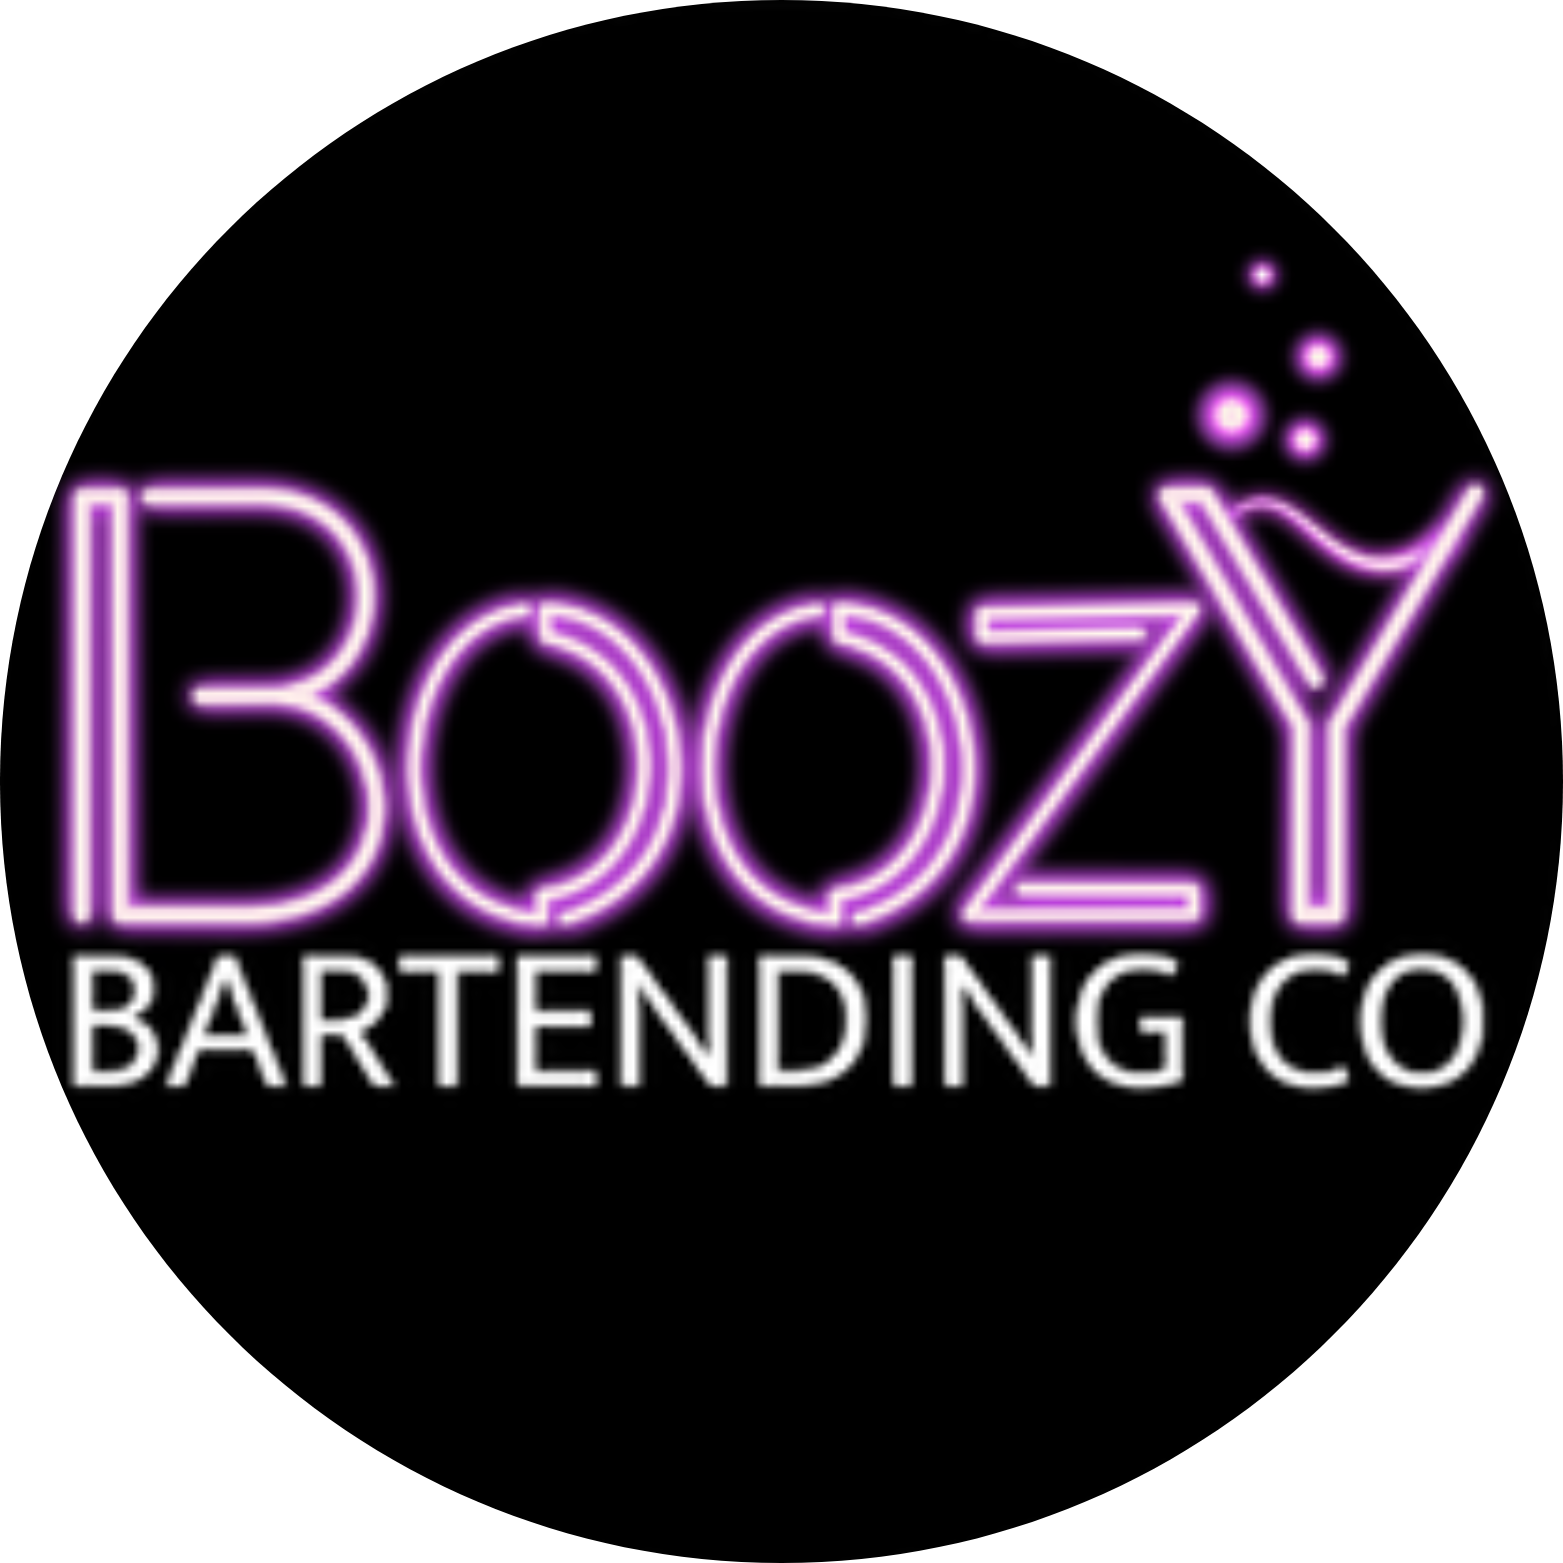 boozy bartending co logo